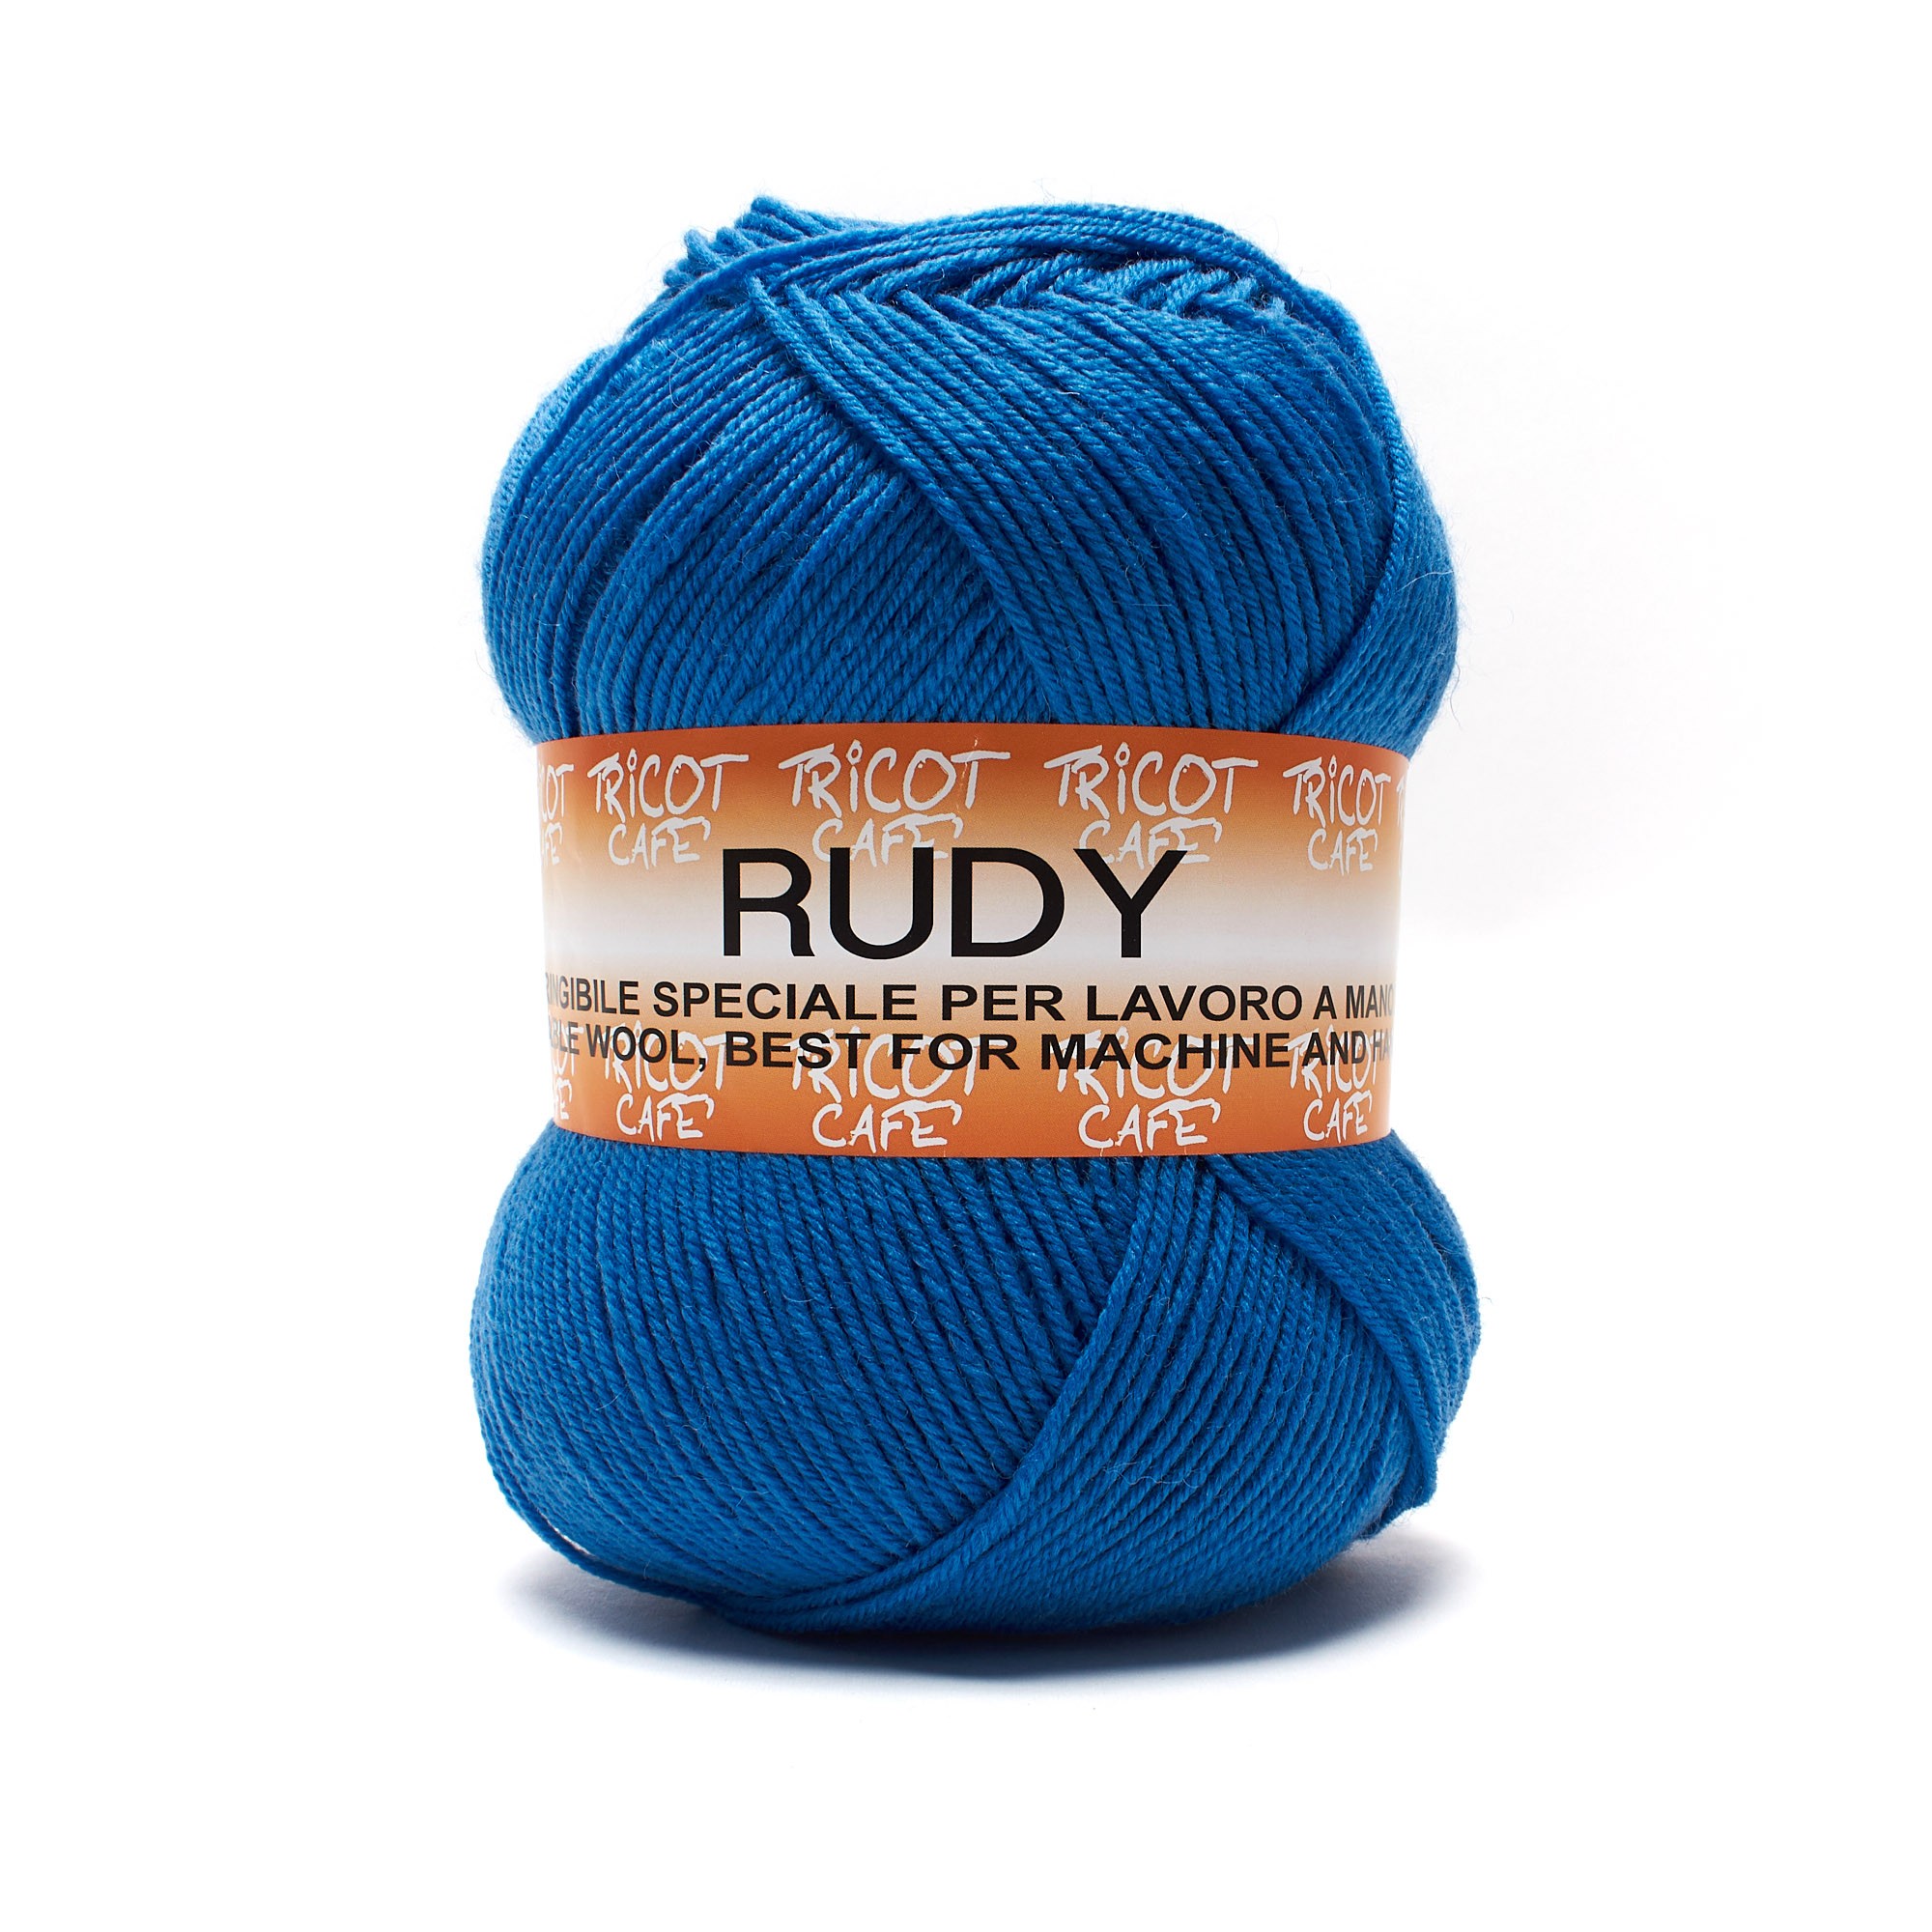 Rudy by Tricot Cafè - Filato misto lana